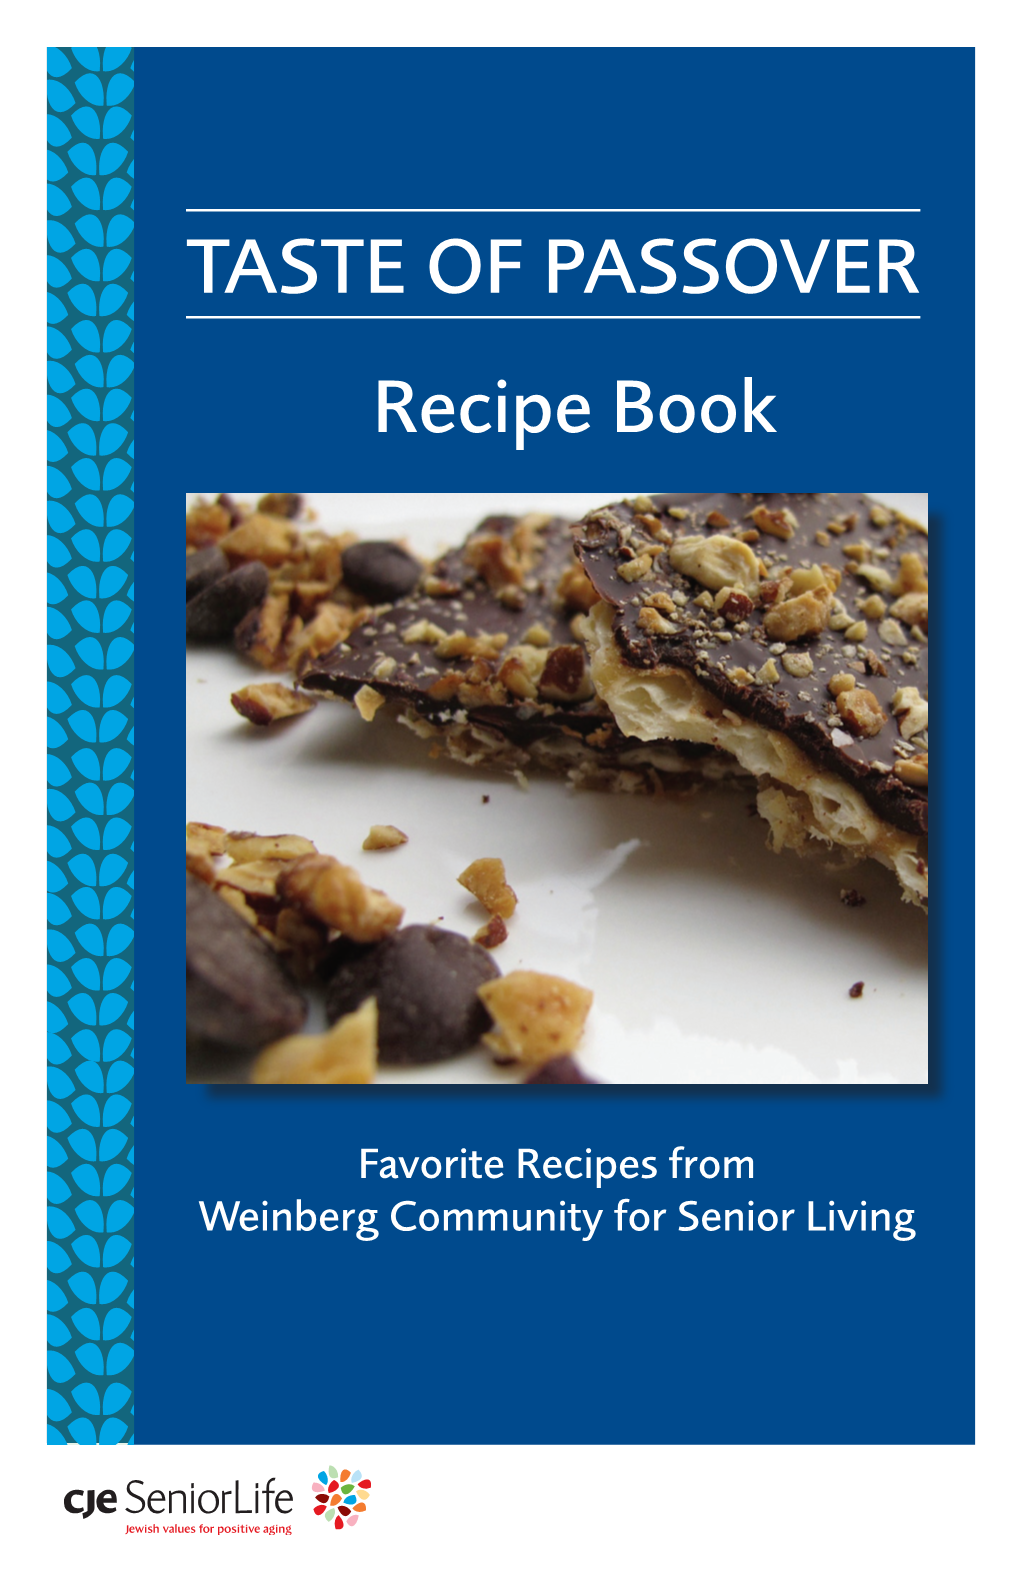 Taste of Passover — Recipe Book